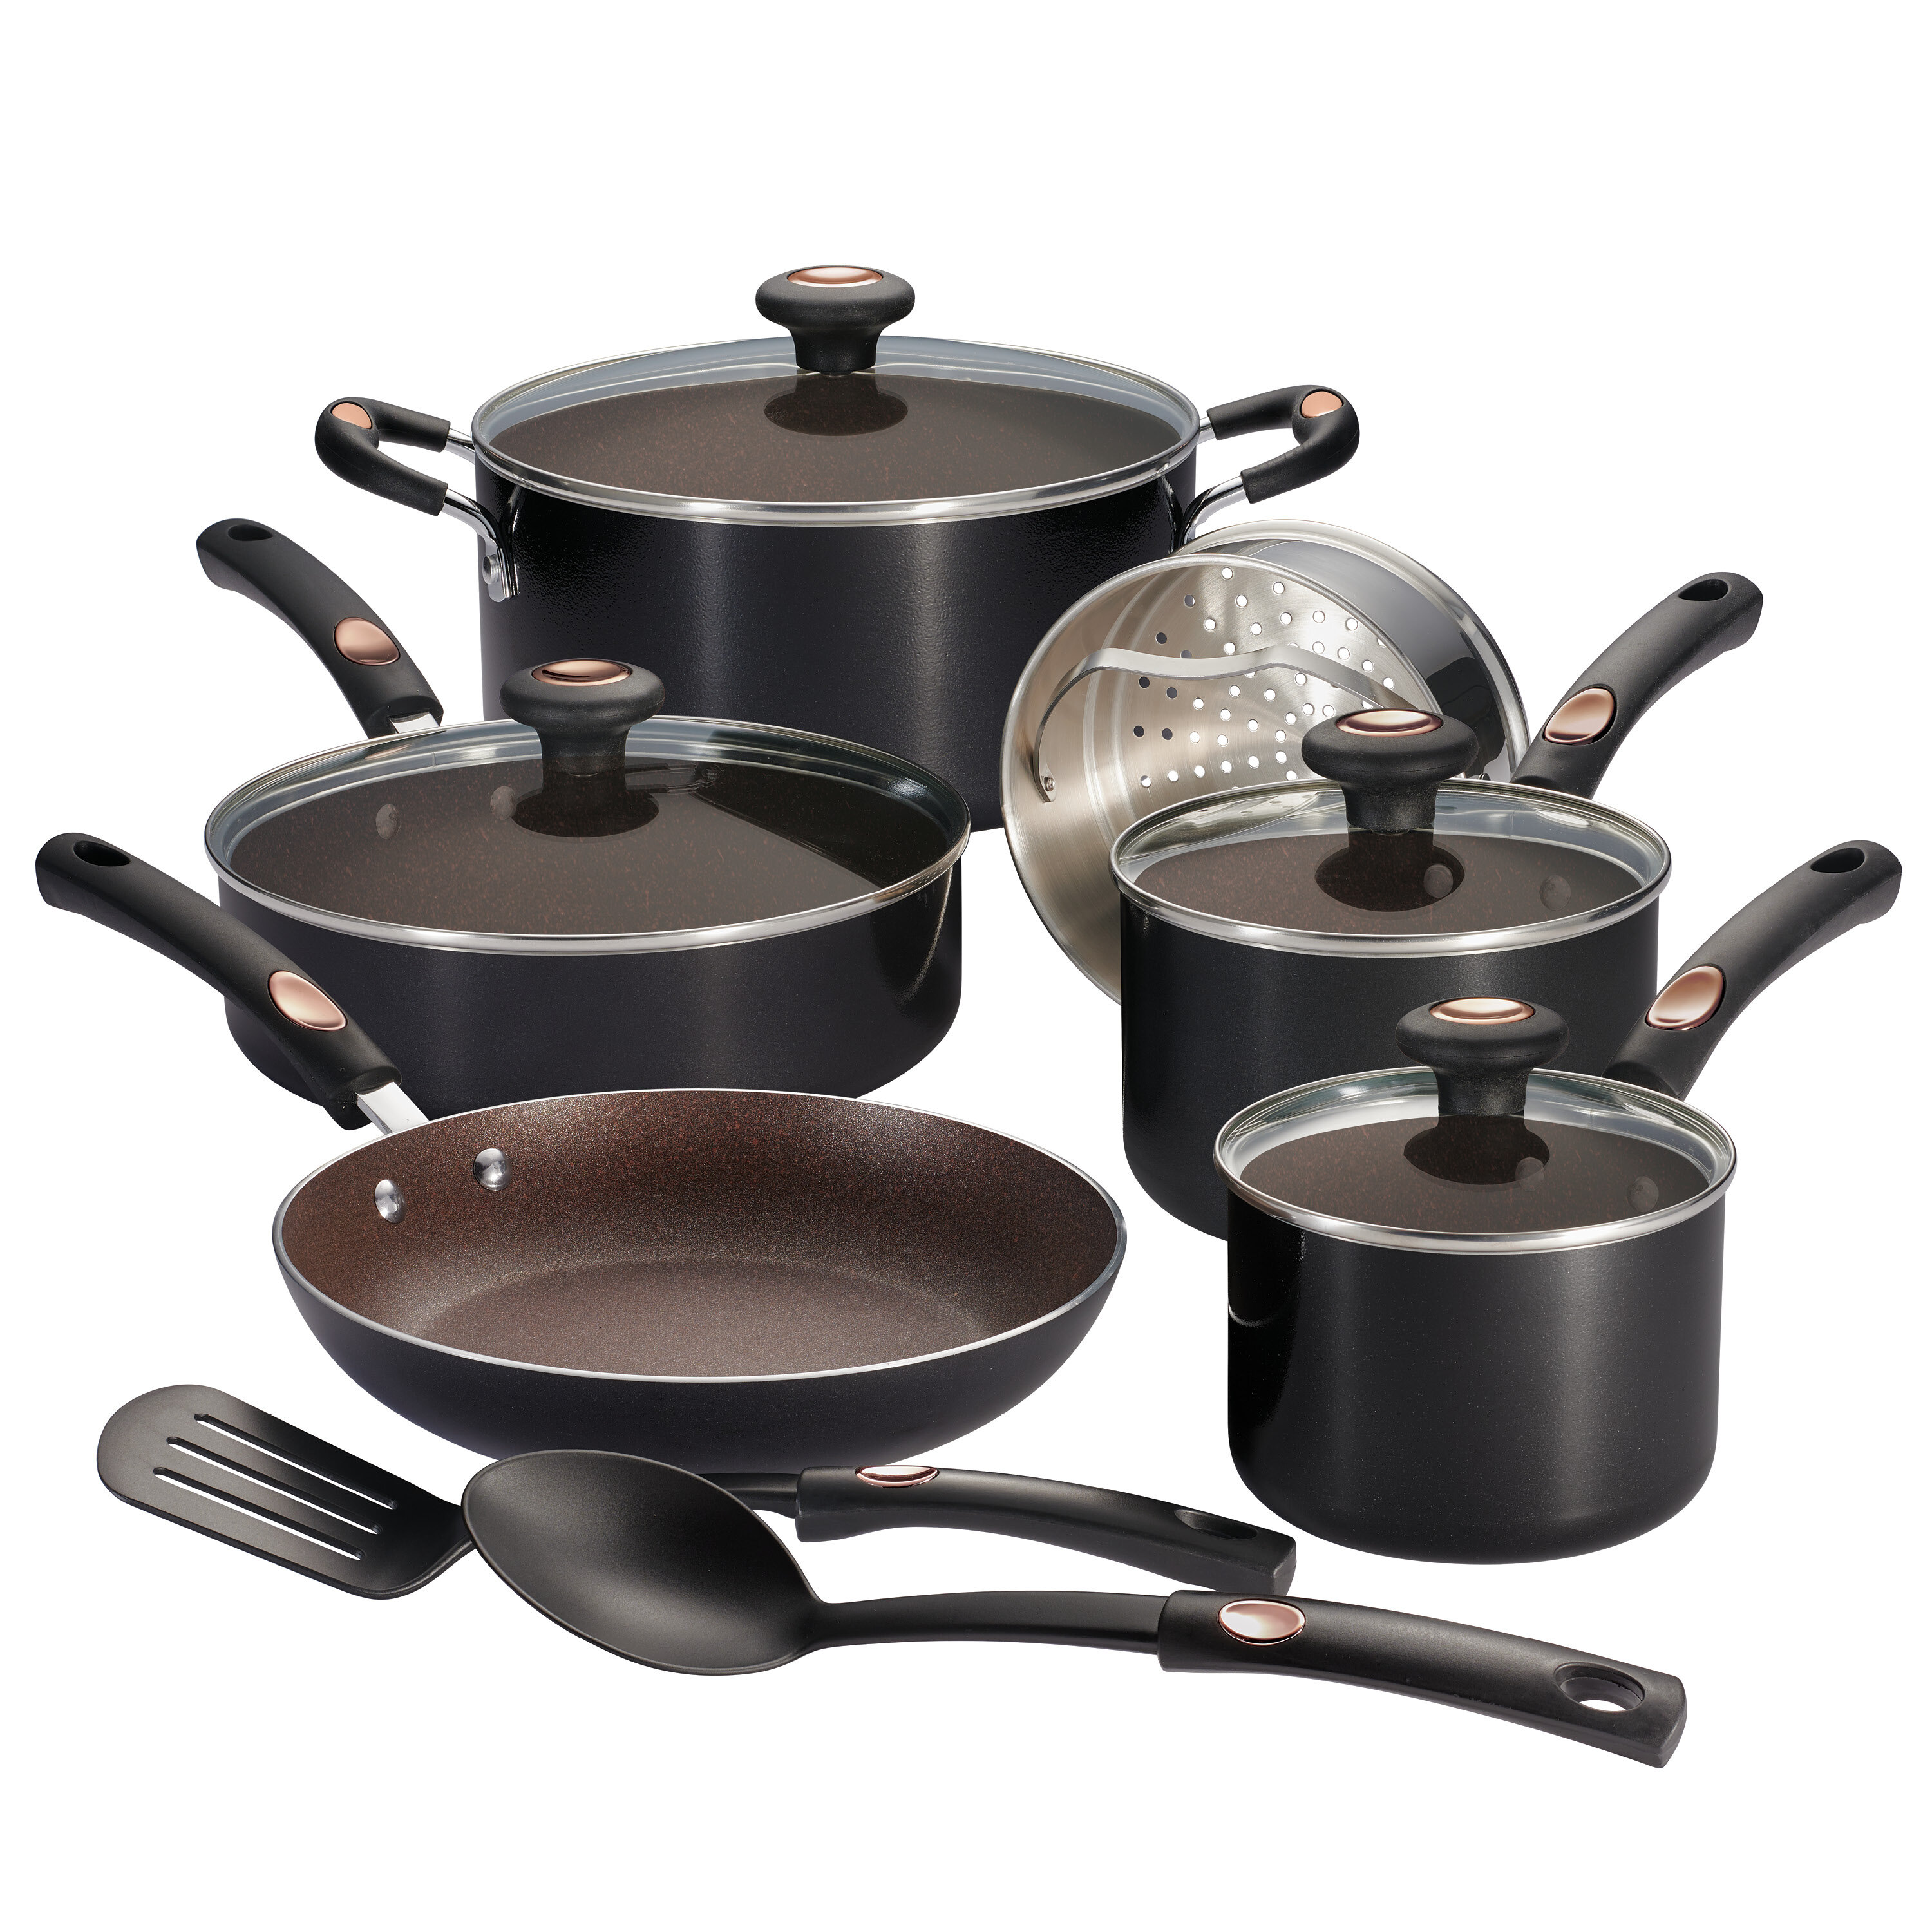 T-fal Signature Nonstick Cookware Set 12 Piece Pots and Pans